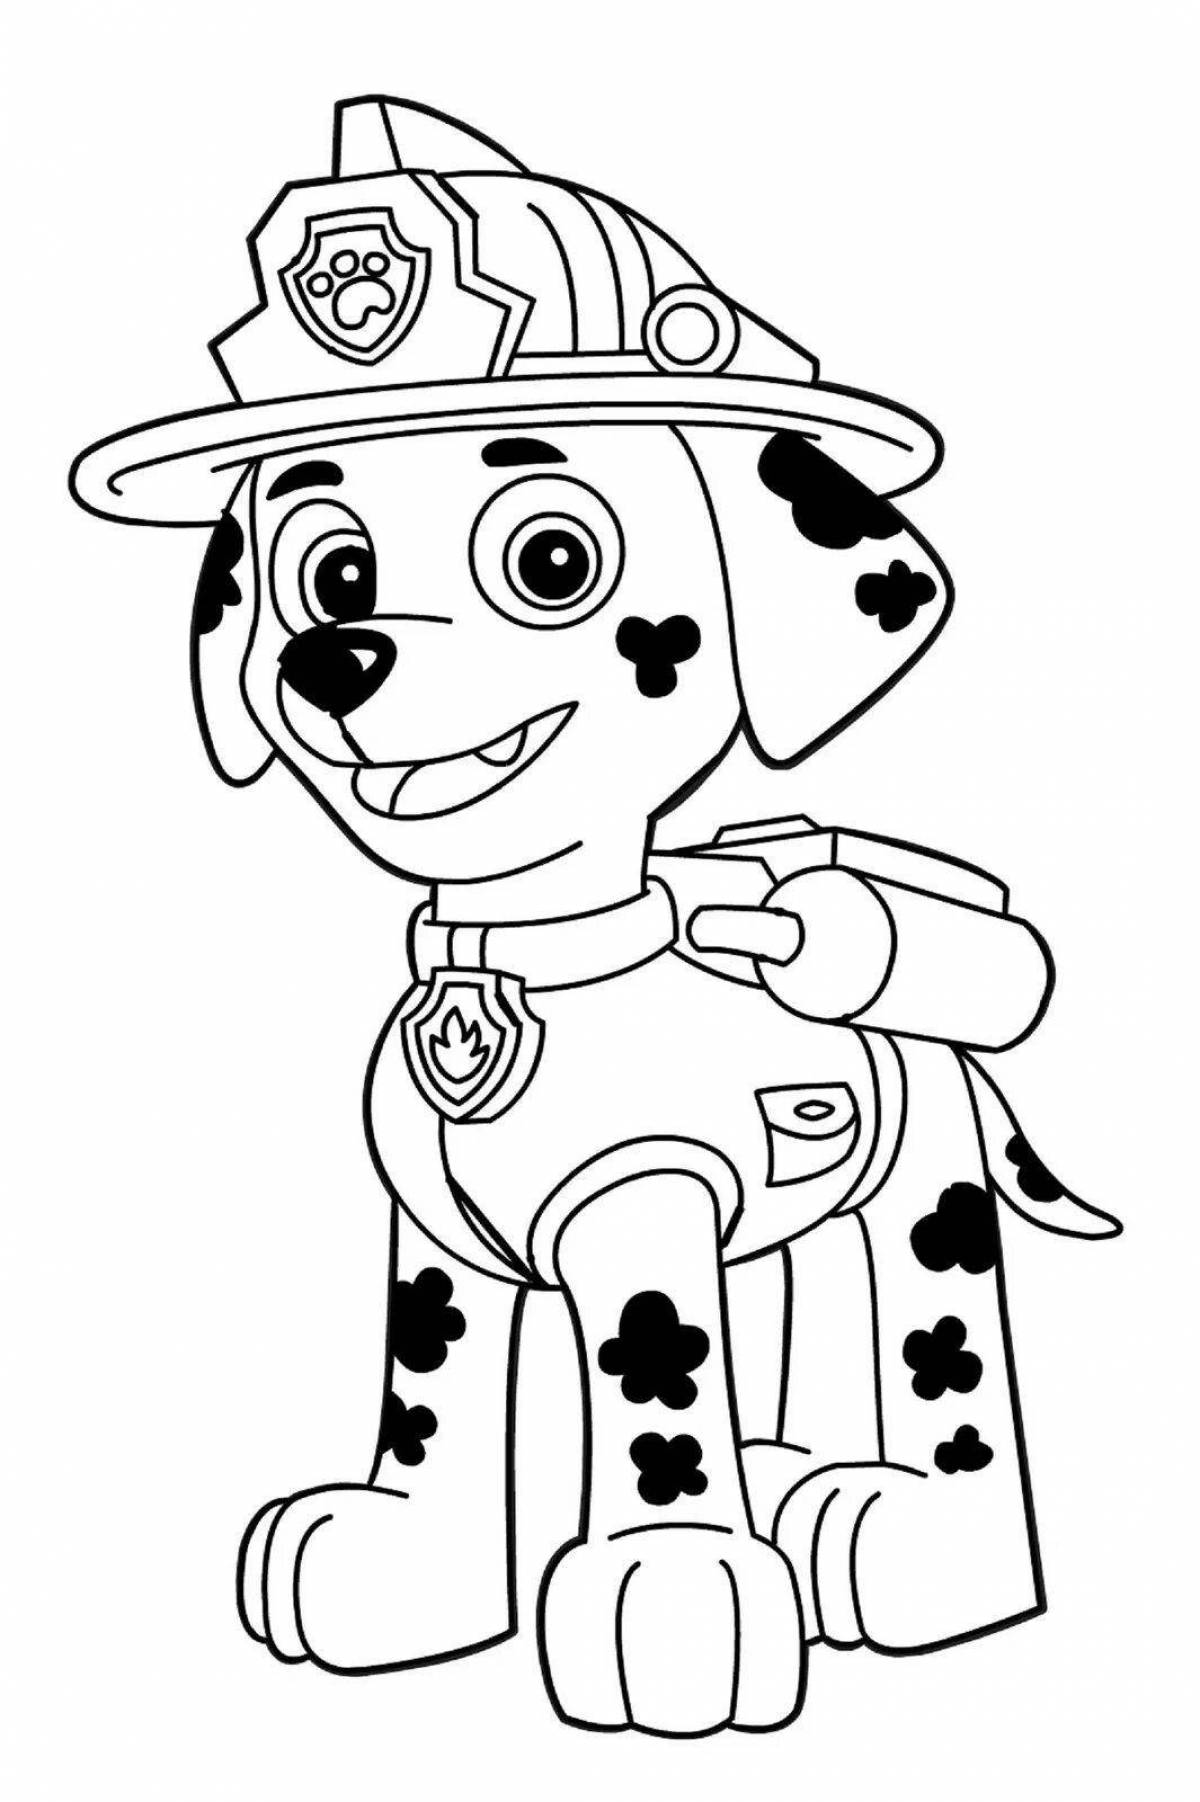 Coloring page adorable cartoon paw patrol